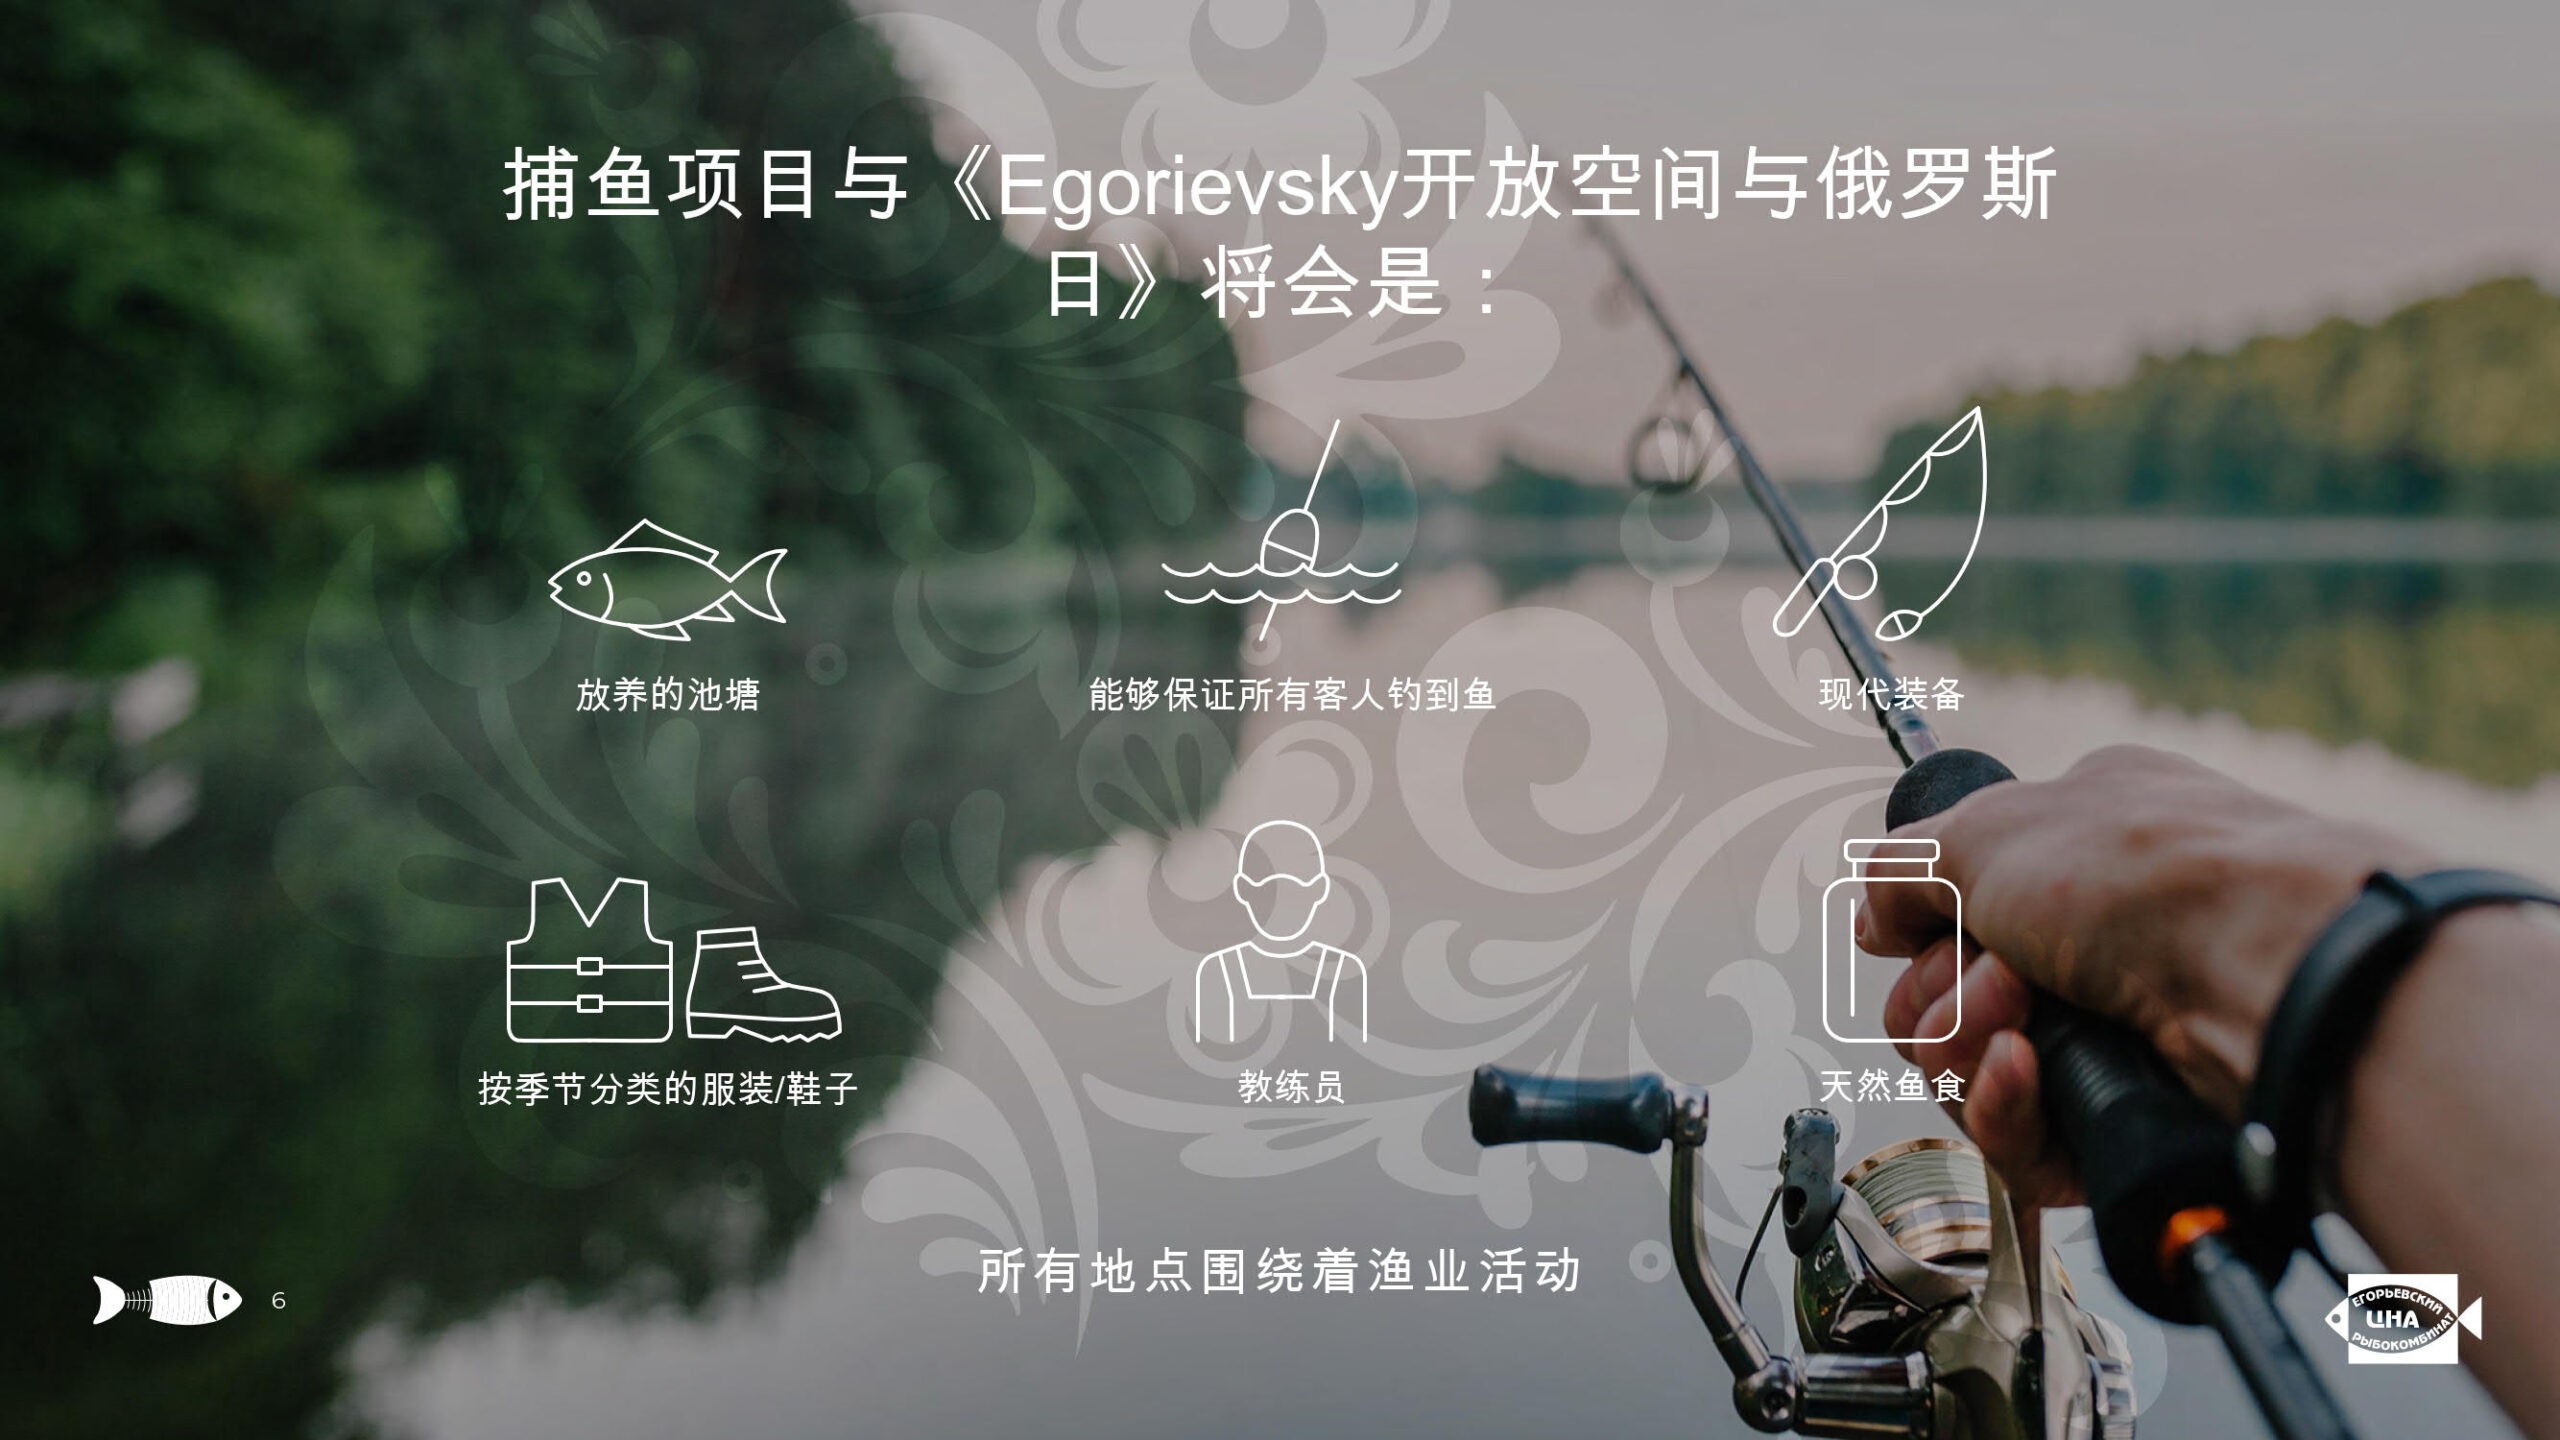 Презентация услуг «Егорьевского рыбкомбината «ЦНА» на китайском языке слайд 4